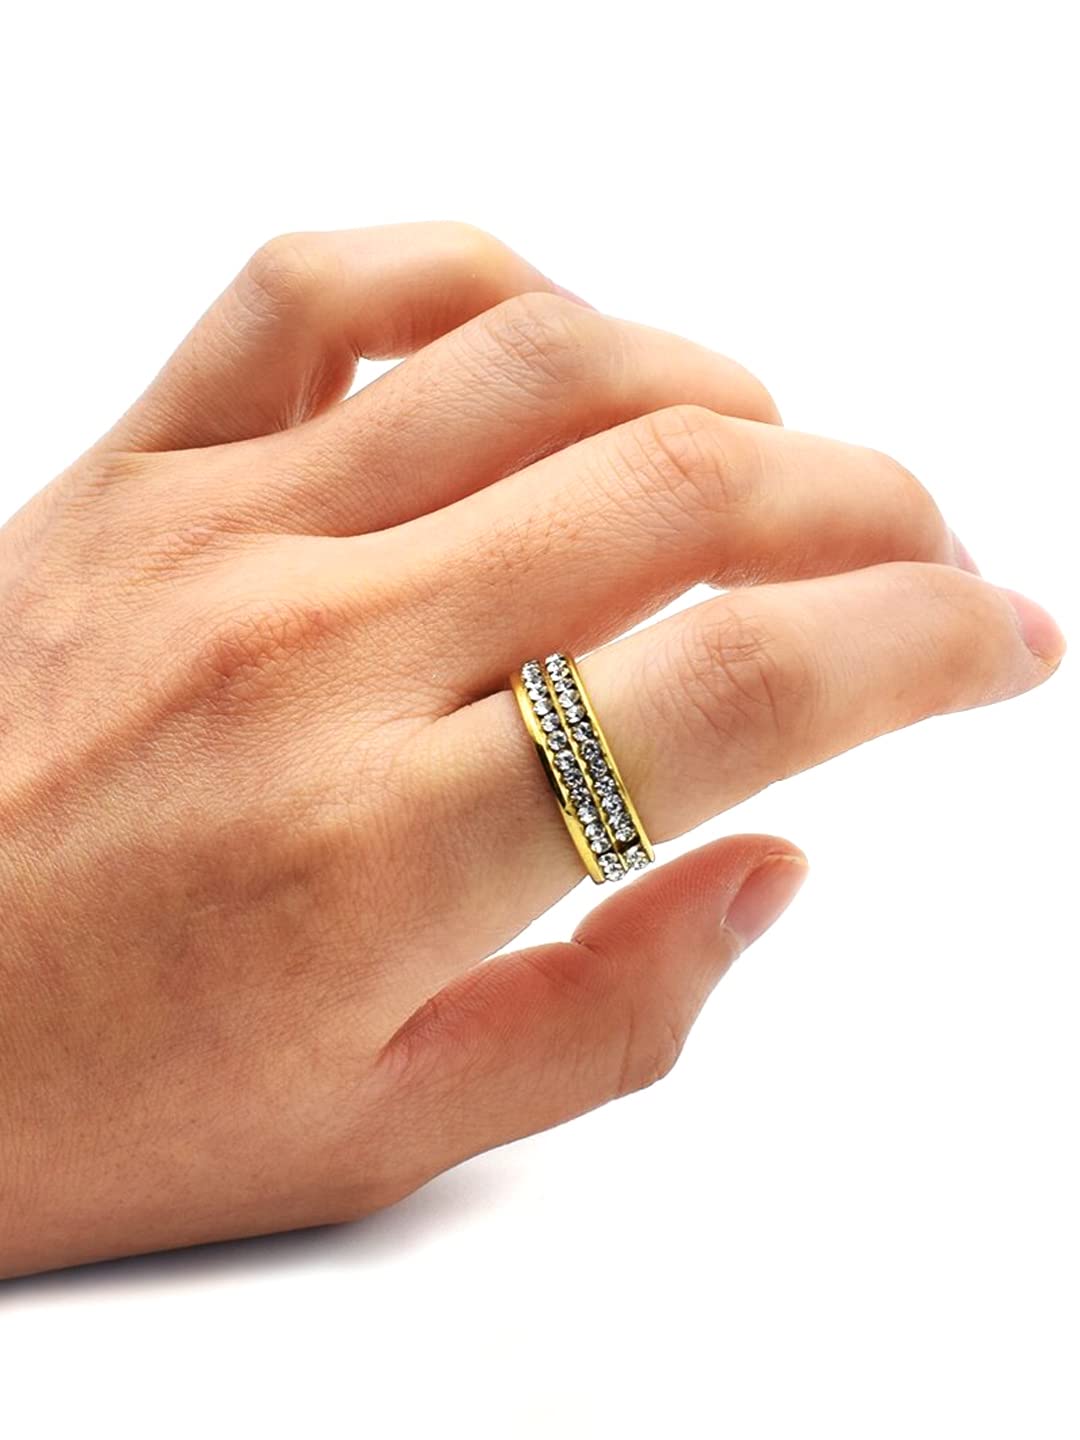 Black Snake Design Finger Ring For Boys And Men